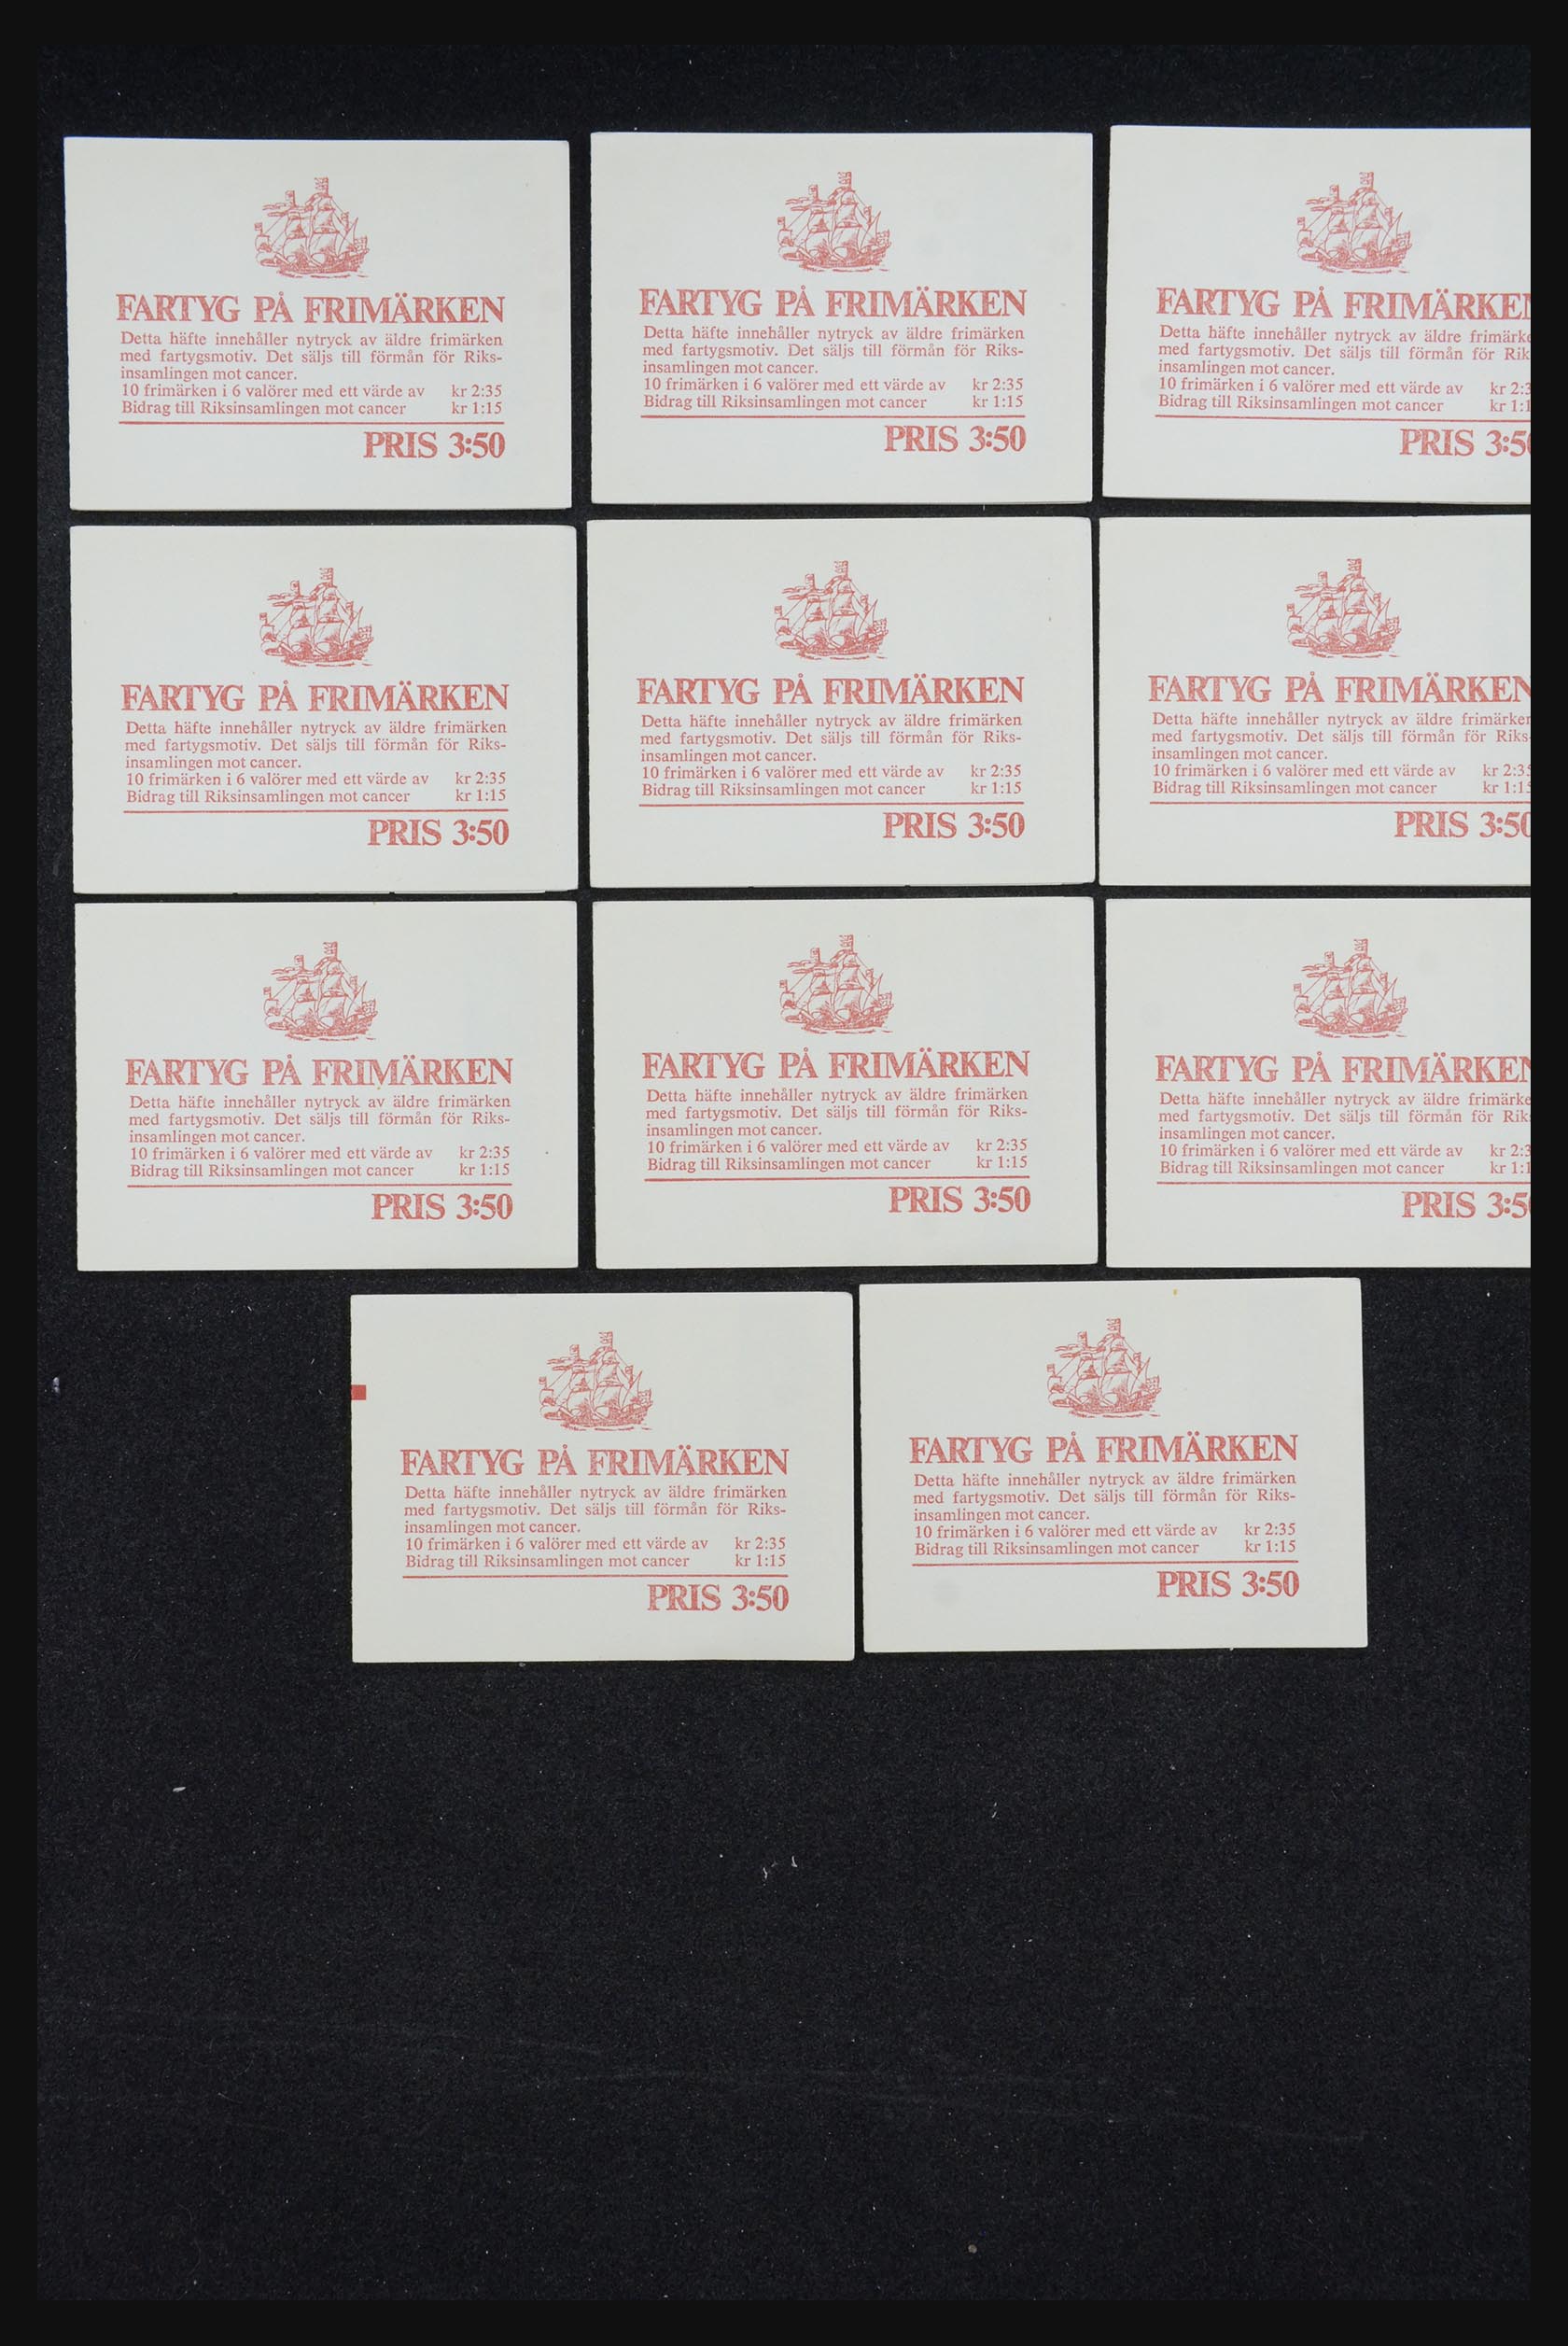 32026 010 - 32026 Sweden stampbooklets 1949-1990.